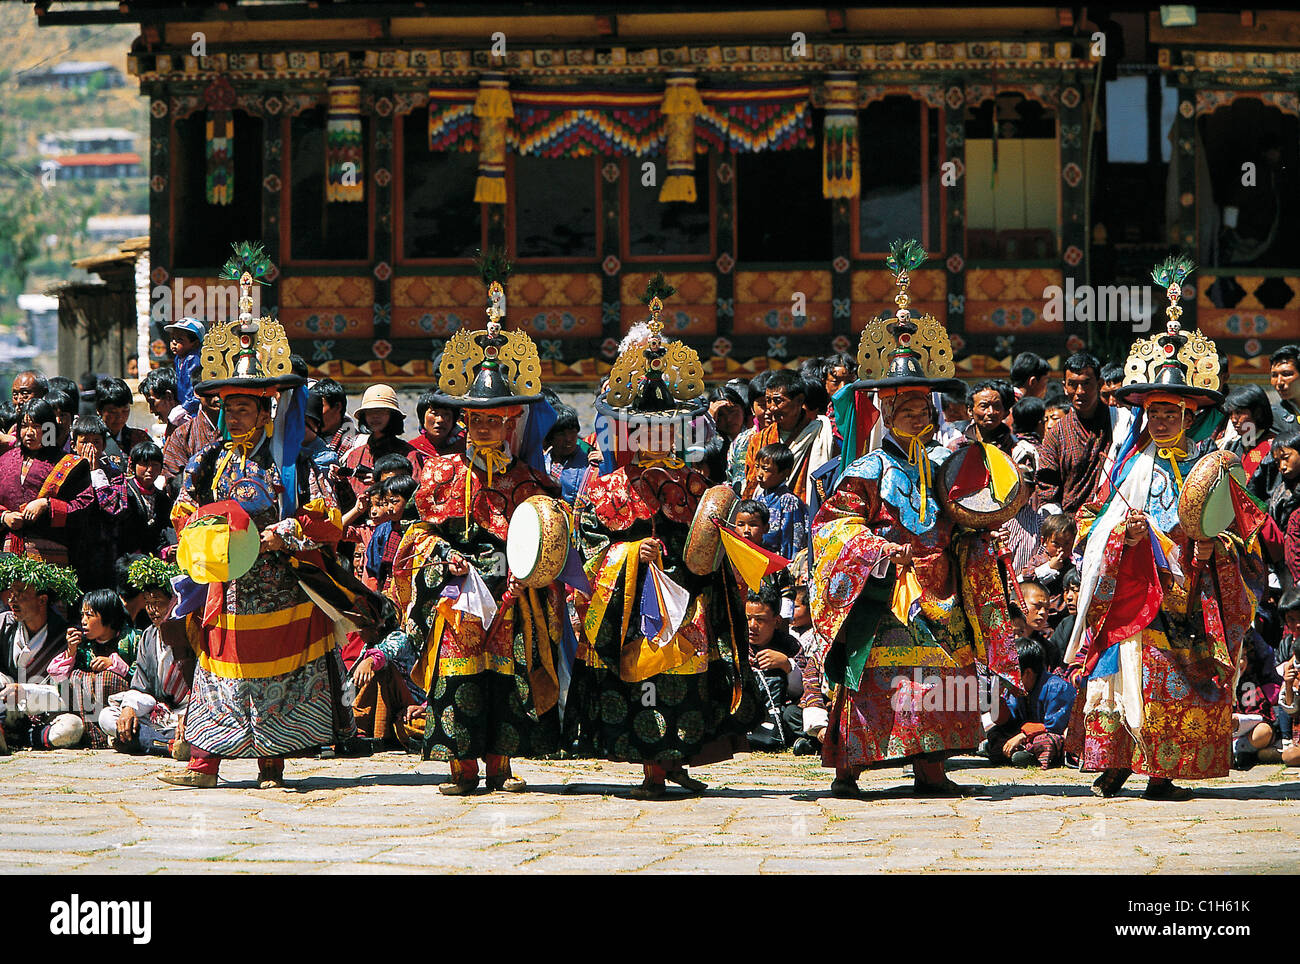 Il Bhutan, Paro, Tsetchou festival nella Paro dzong fortezza, danze rituali con costumi e maschere riferendosi al demone è sottomissione Foto Stock